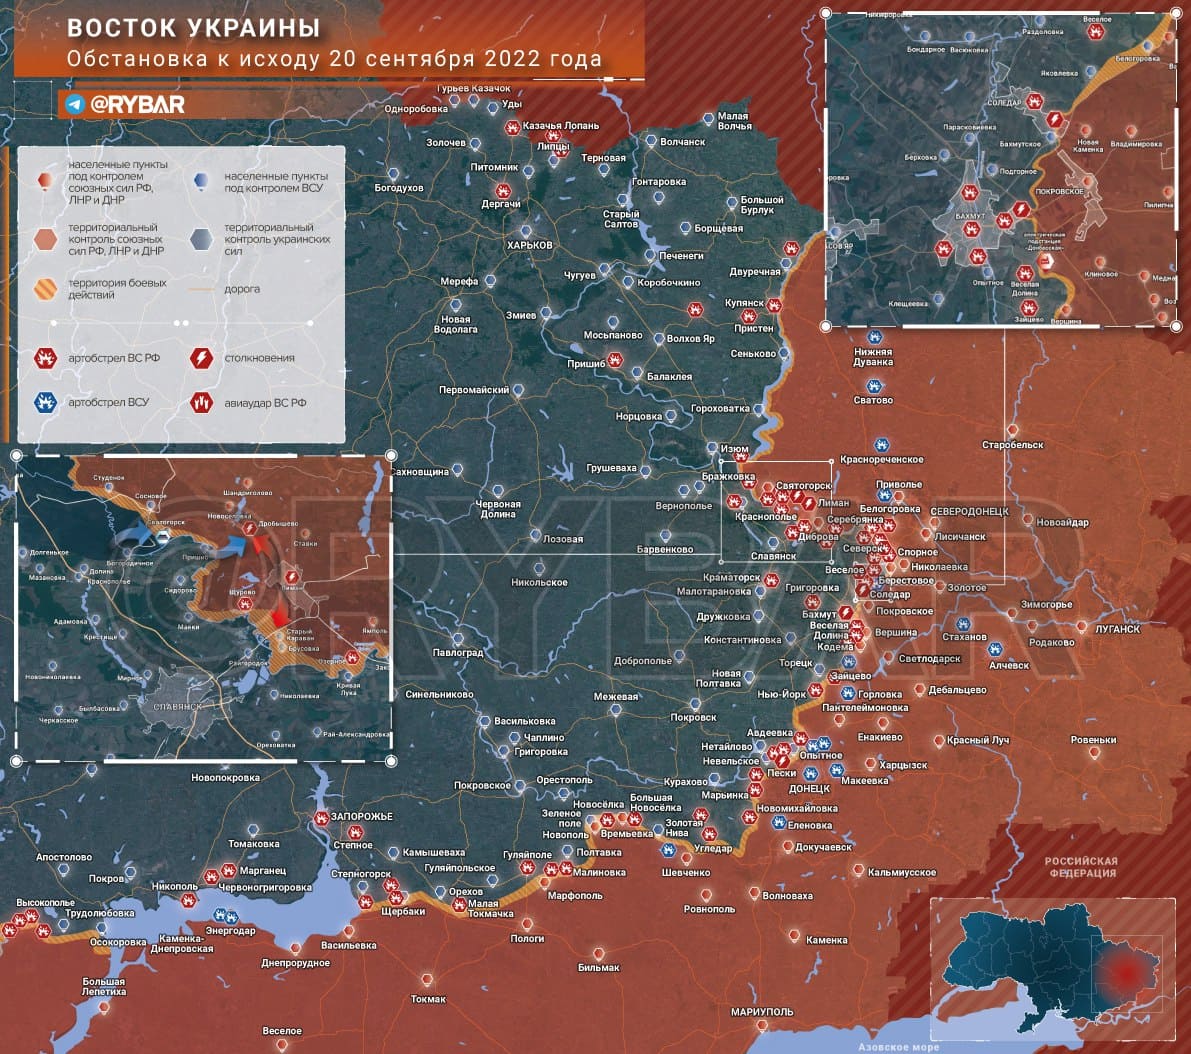 22 Eylül’de Ukrayna’da cephe haritası ve son durum